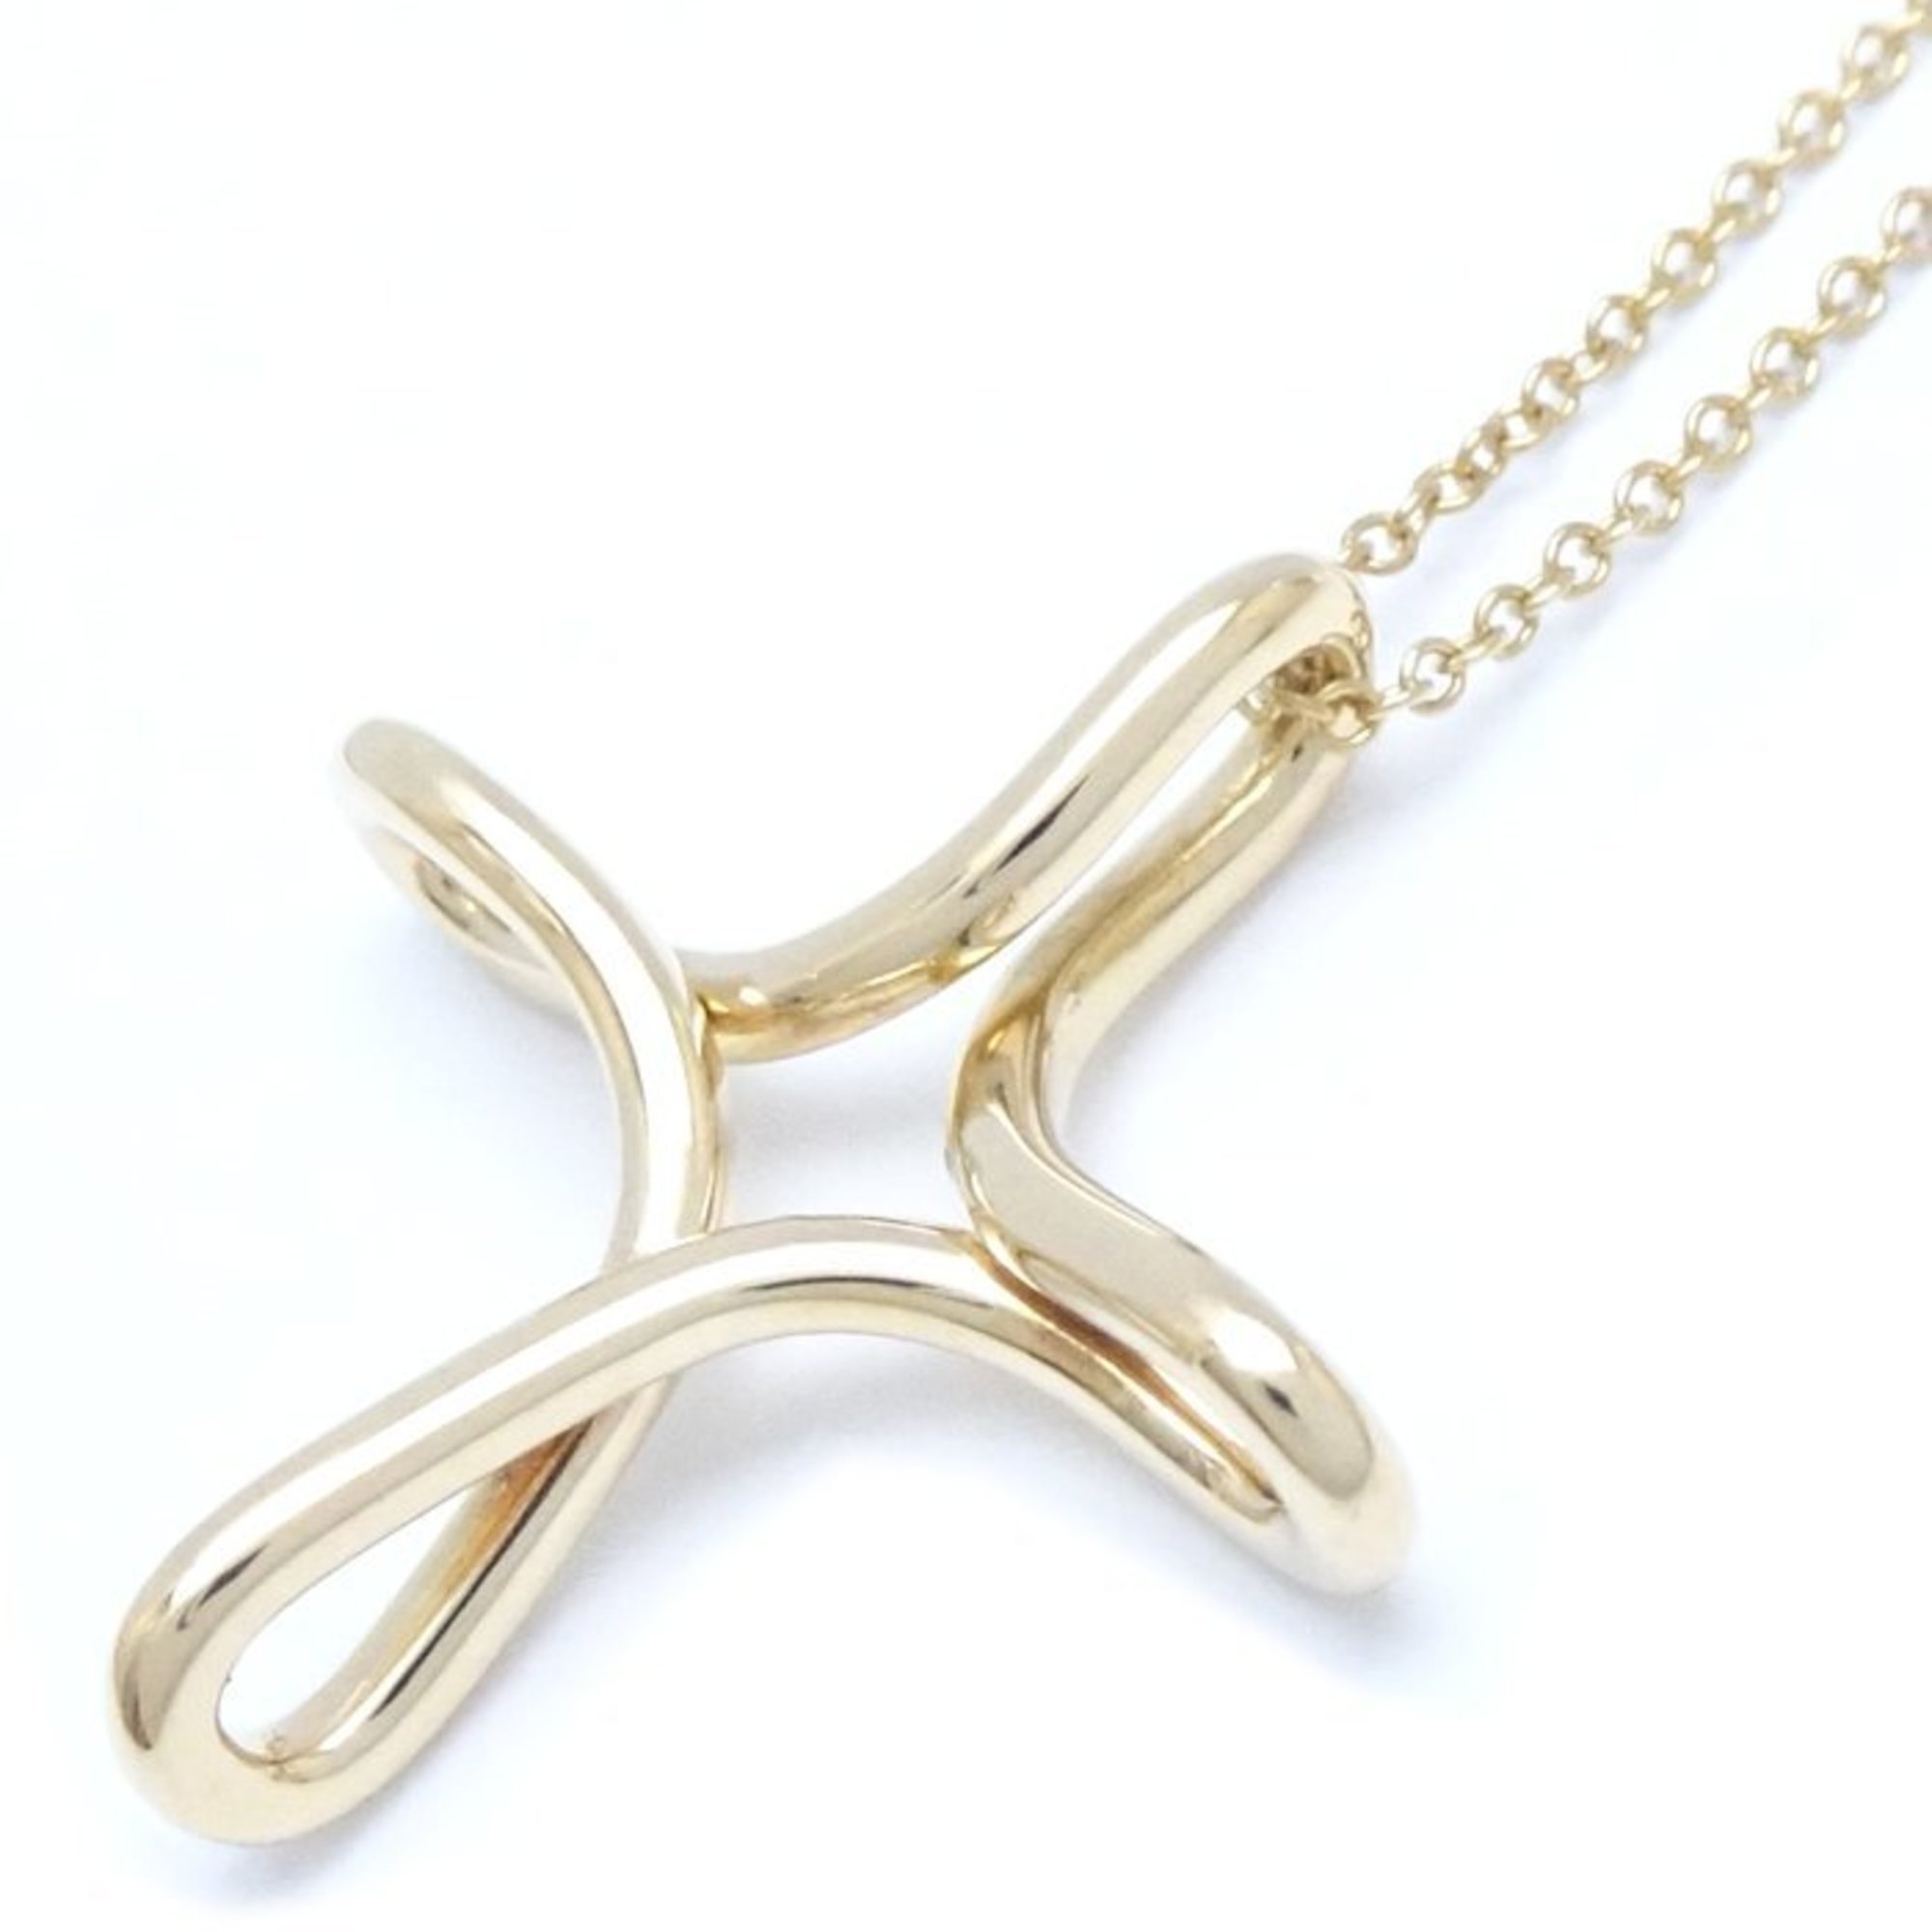 TIFFANY&Co. Tiffany Infinity Cross Necklace Elsa Peretti K18YG Yellow Gold 291956